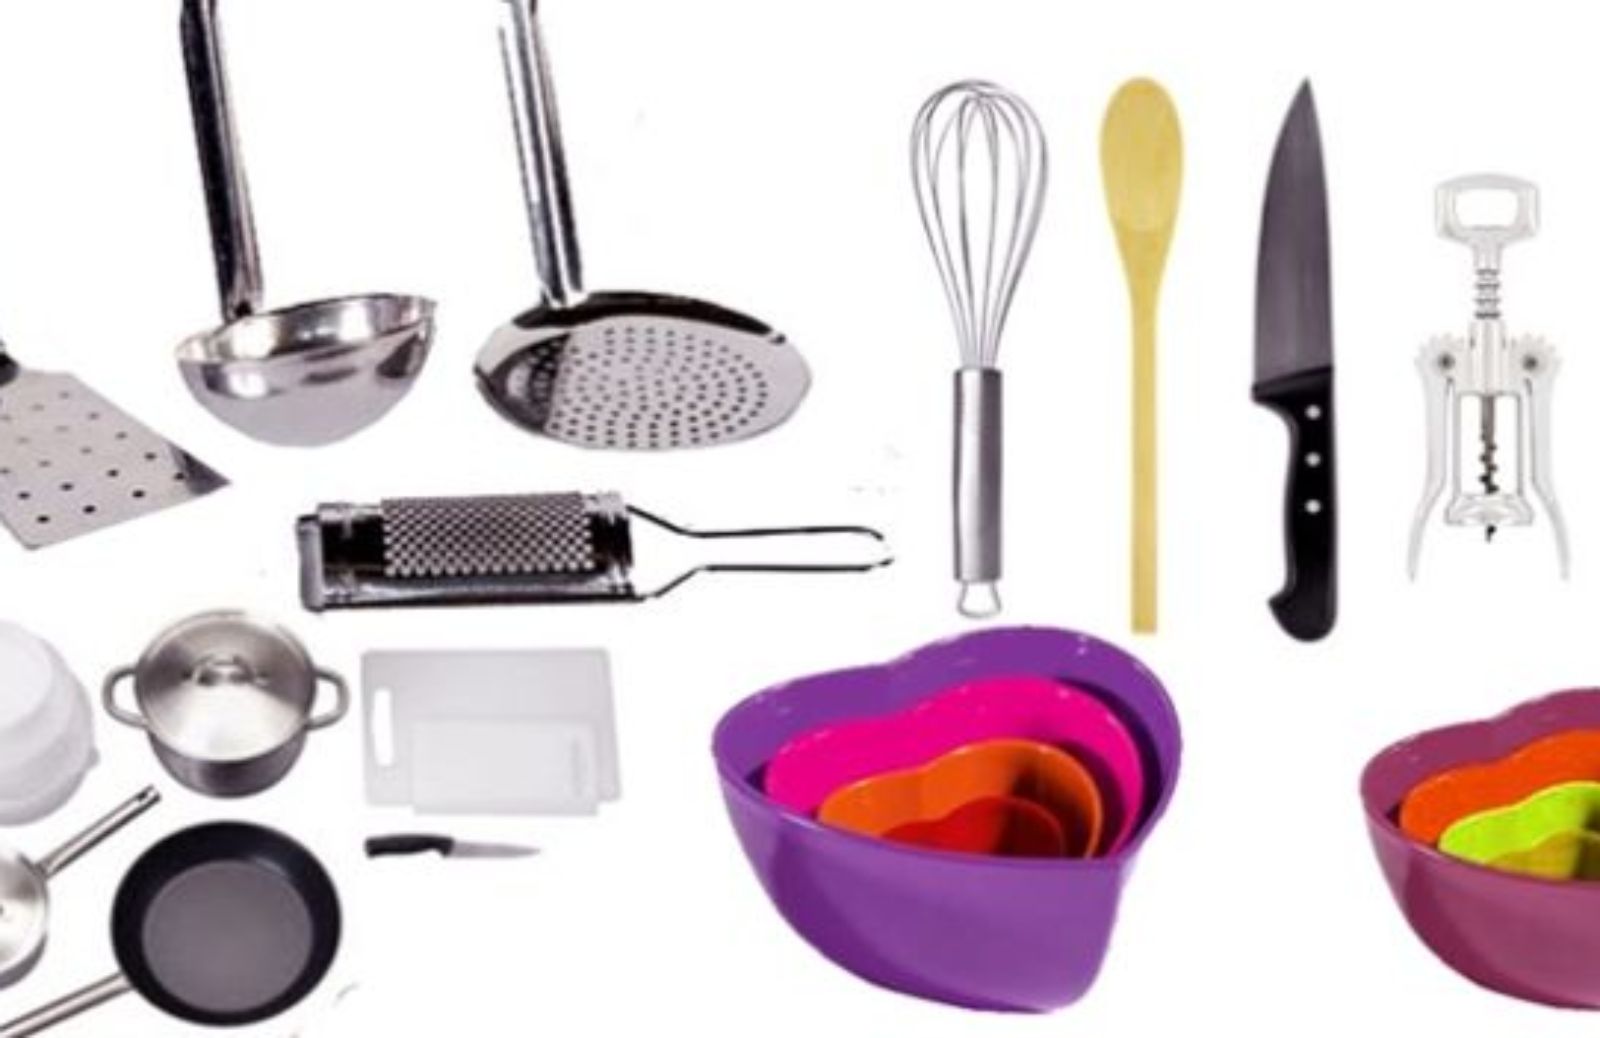 Come avere una cucina attrezzata: gli utensili fondamentali